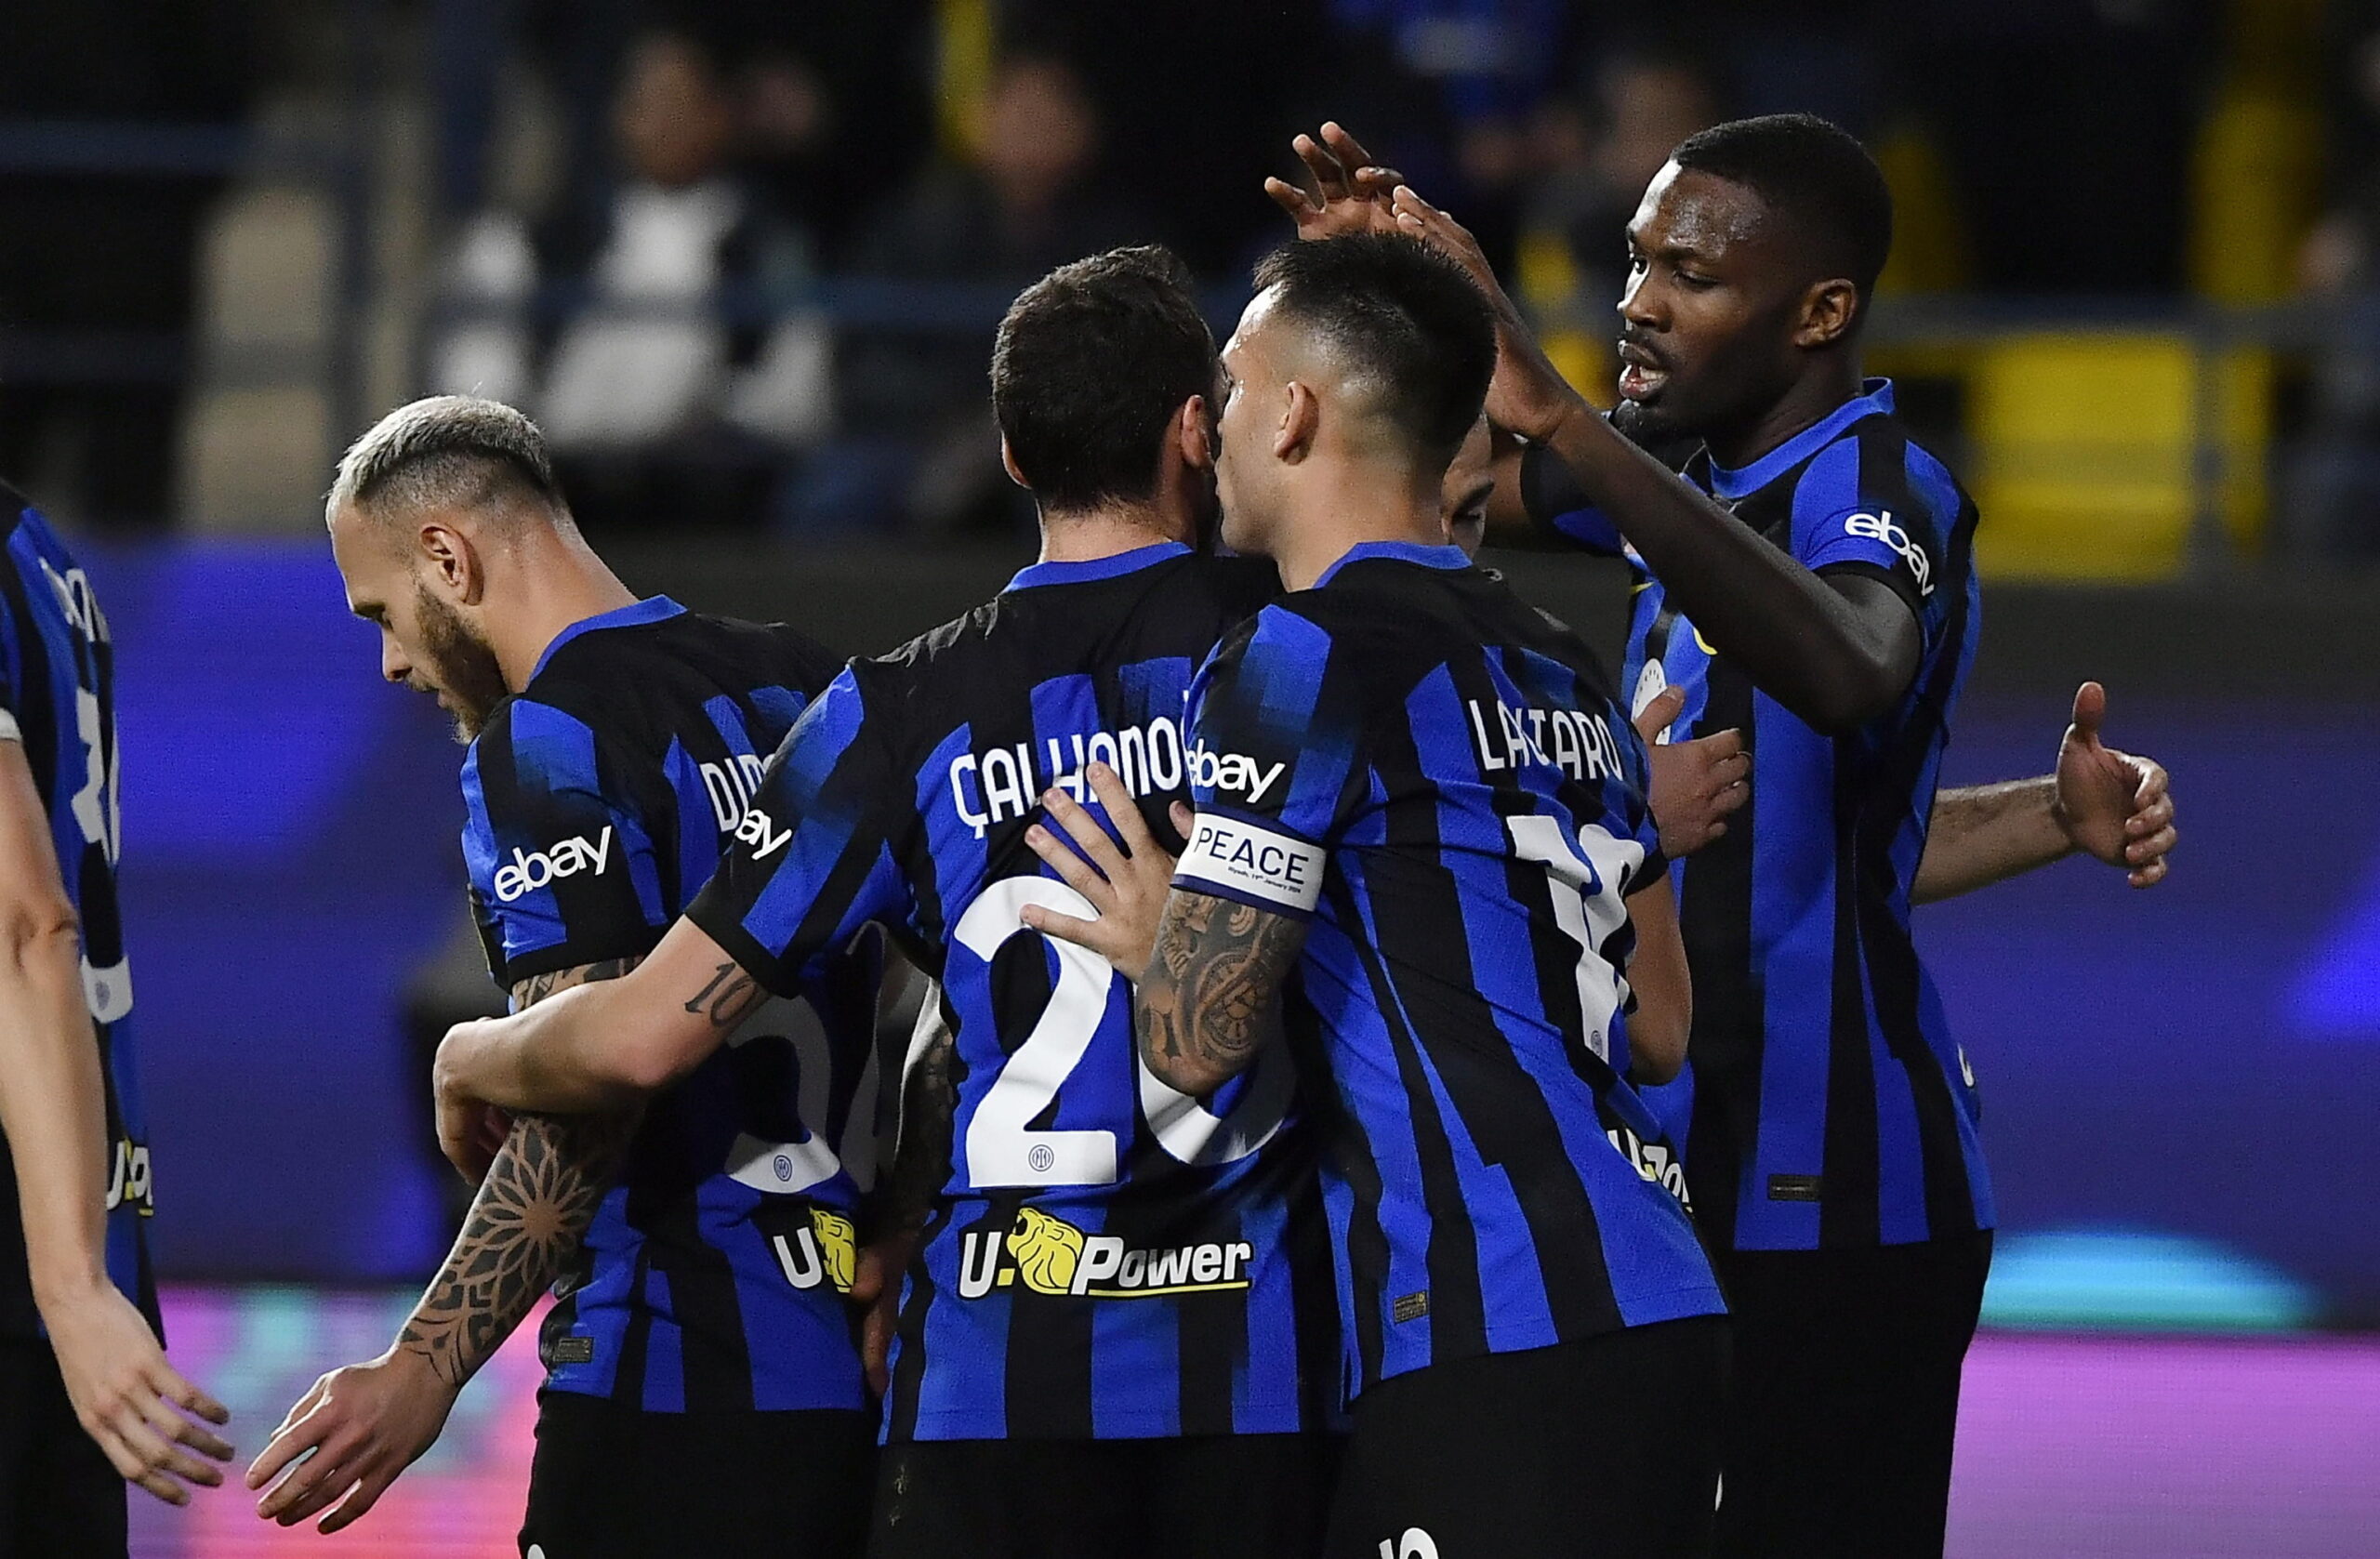 Inter vicina ad un insolito record: vince lo Scudetto senza giocare mai…